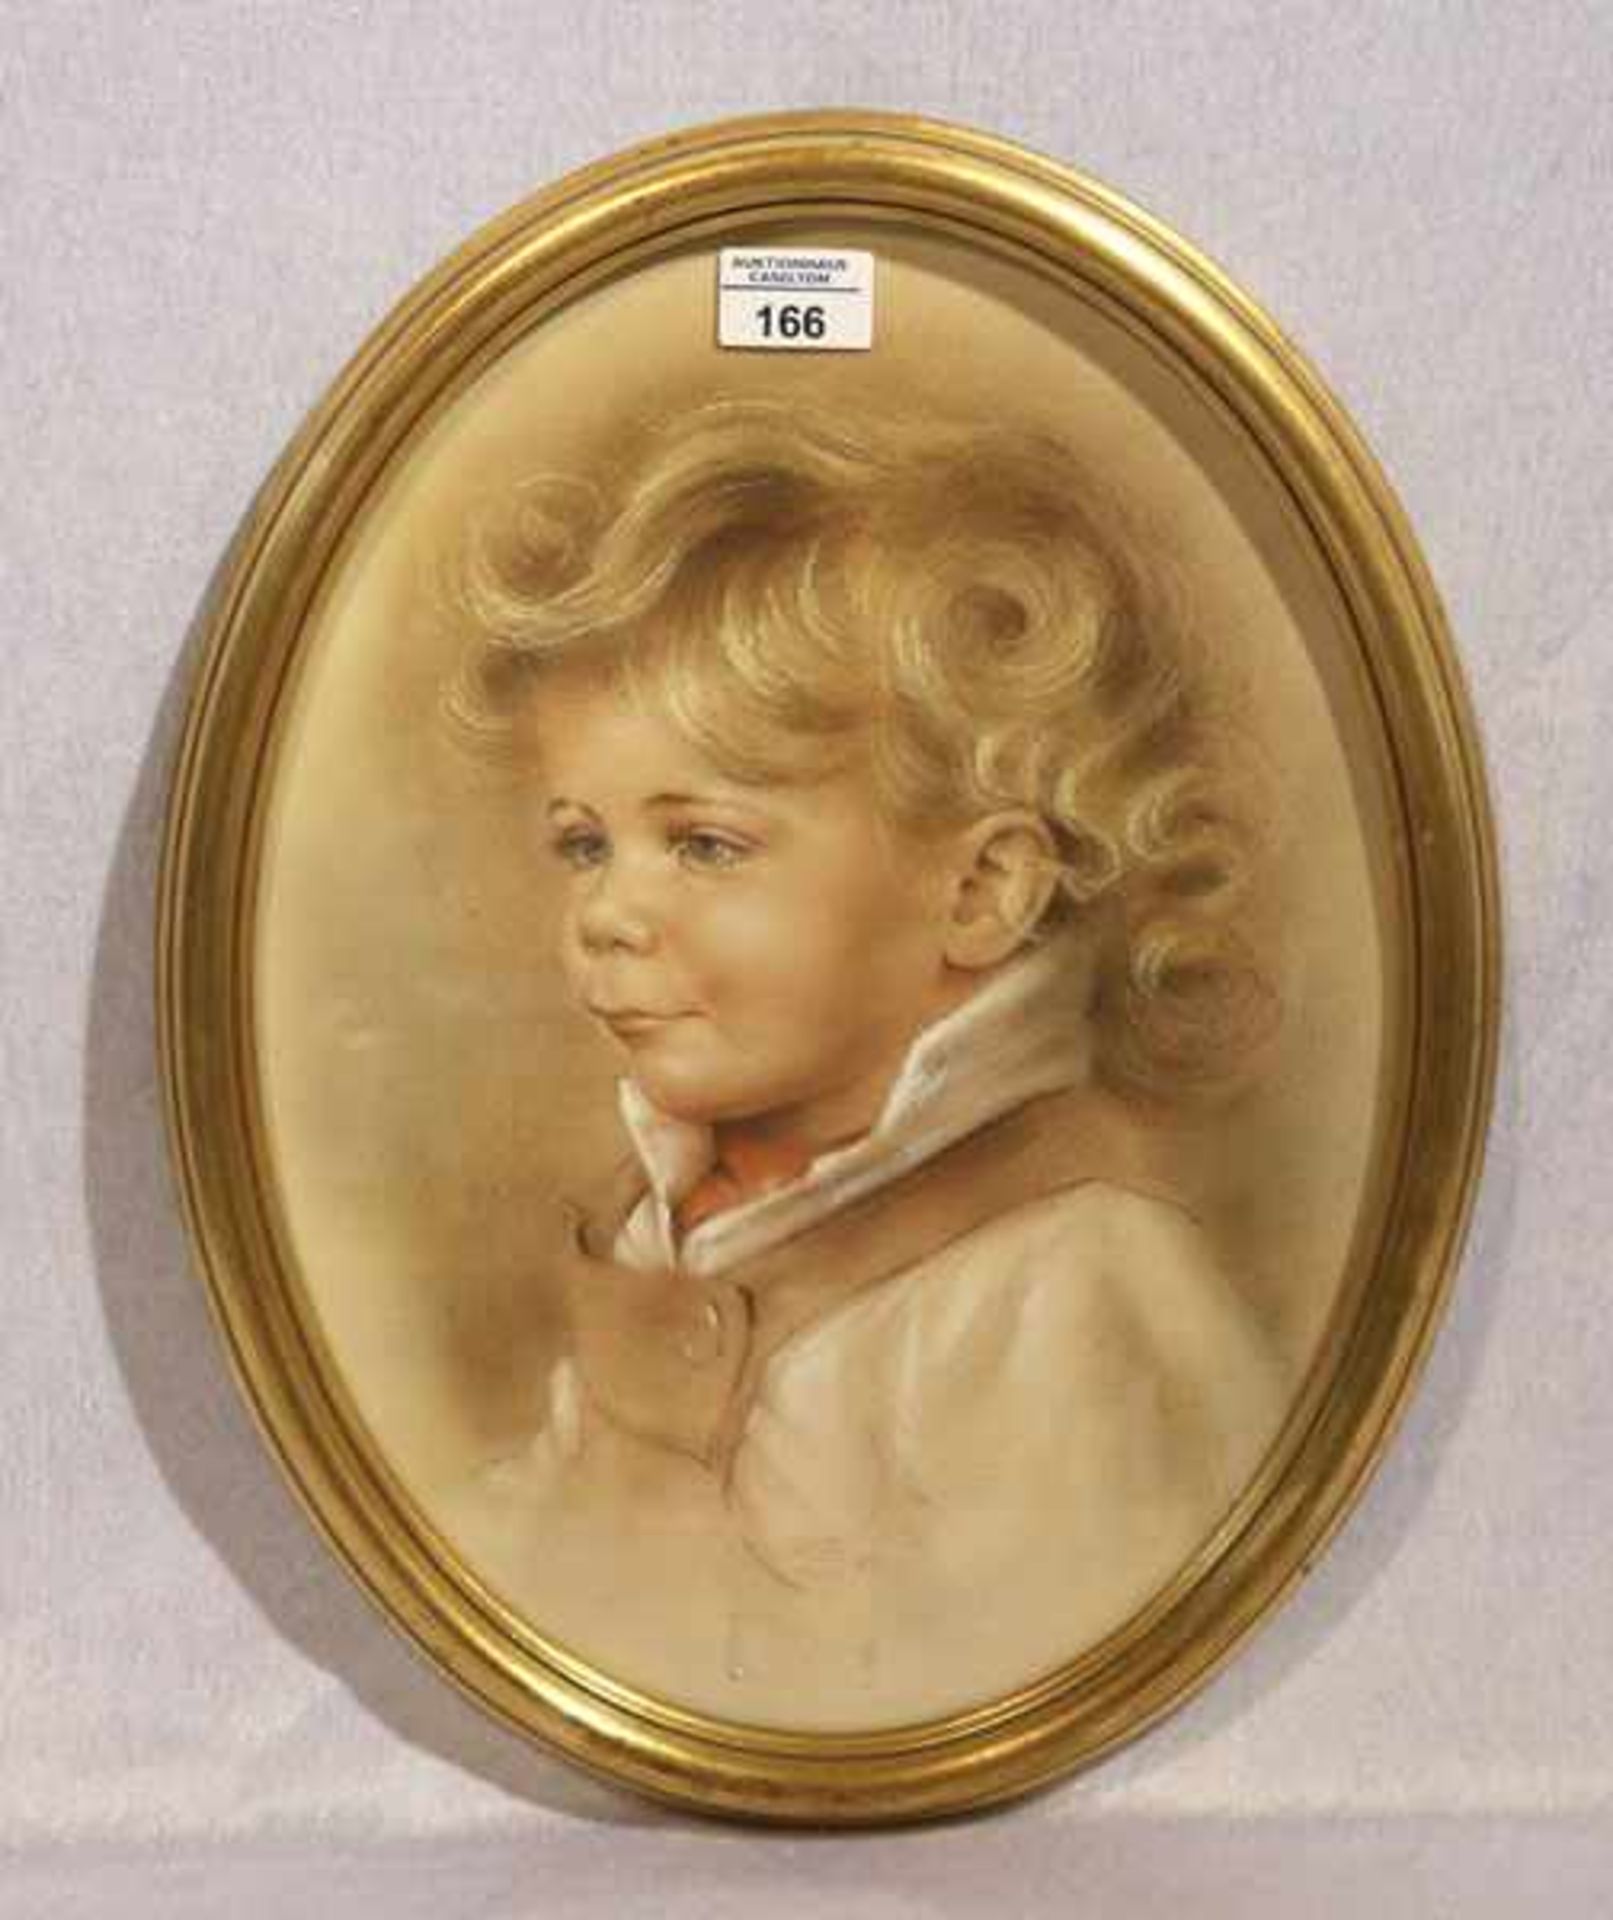 Gemälde Pastell 'Jungenbildnis', monogrammiert ZE, datiert 80, für Harry Zeidler, * 18.1.1930 + 5.